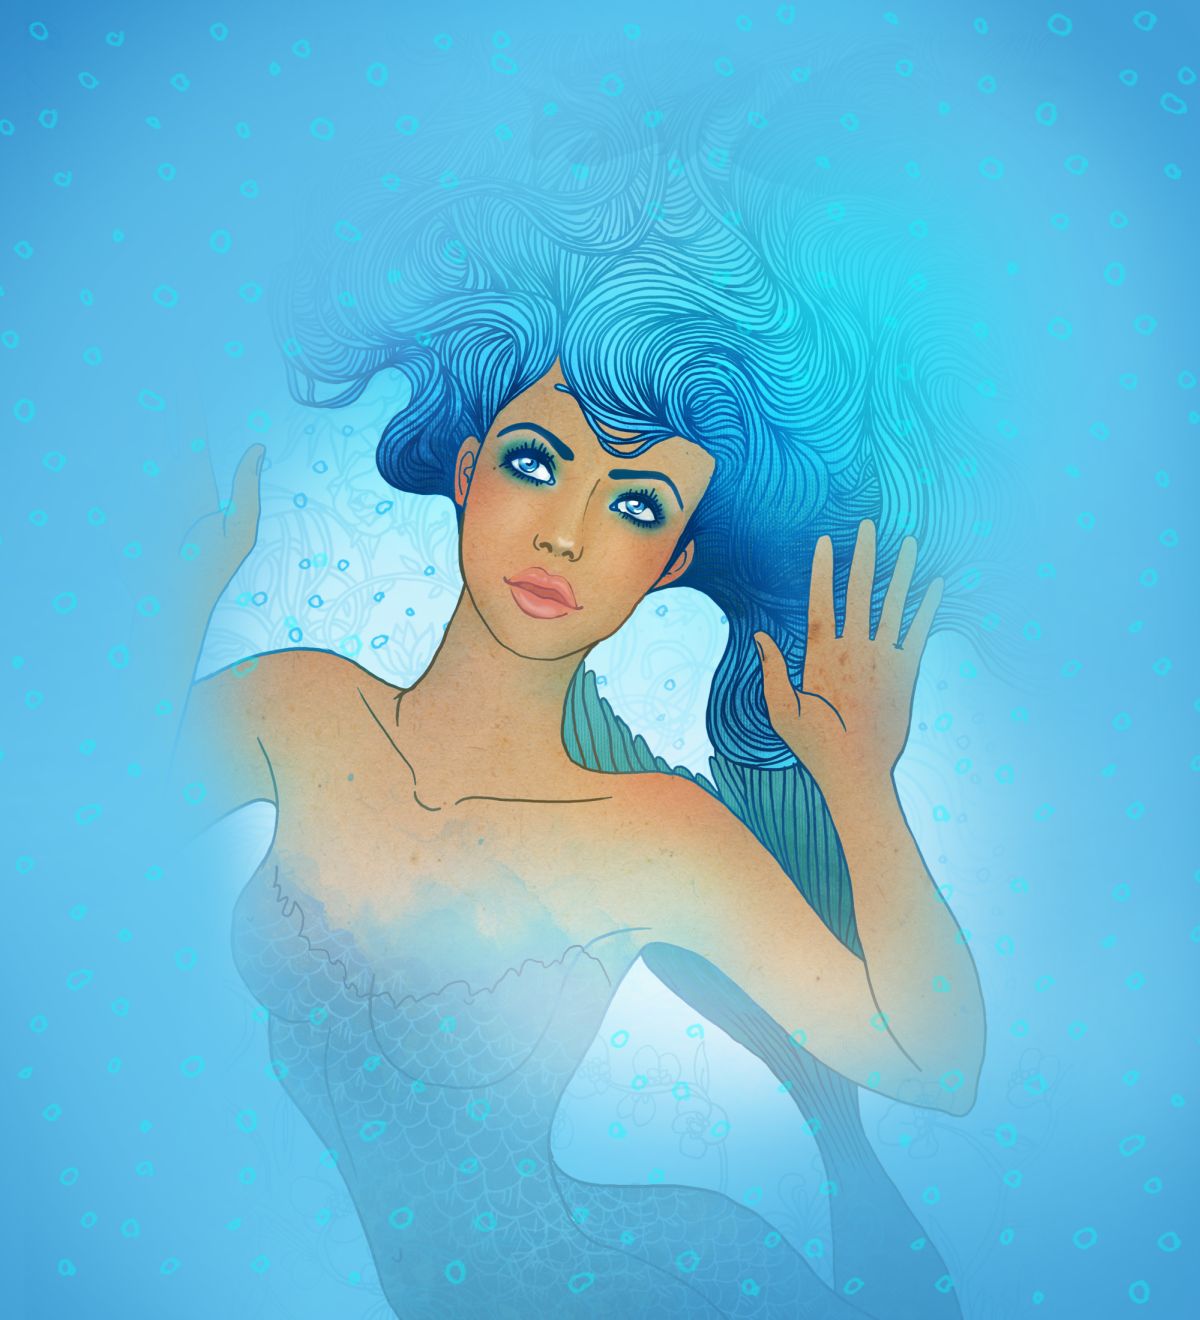 O femeie frumoasă, care seamănă cu o sirenă, ilustrează zodia Pești, pe un fundal albastru.